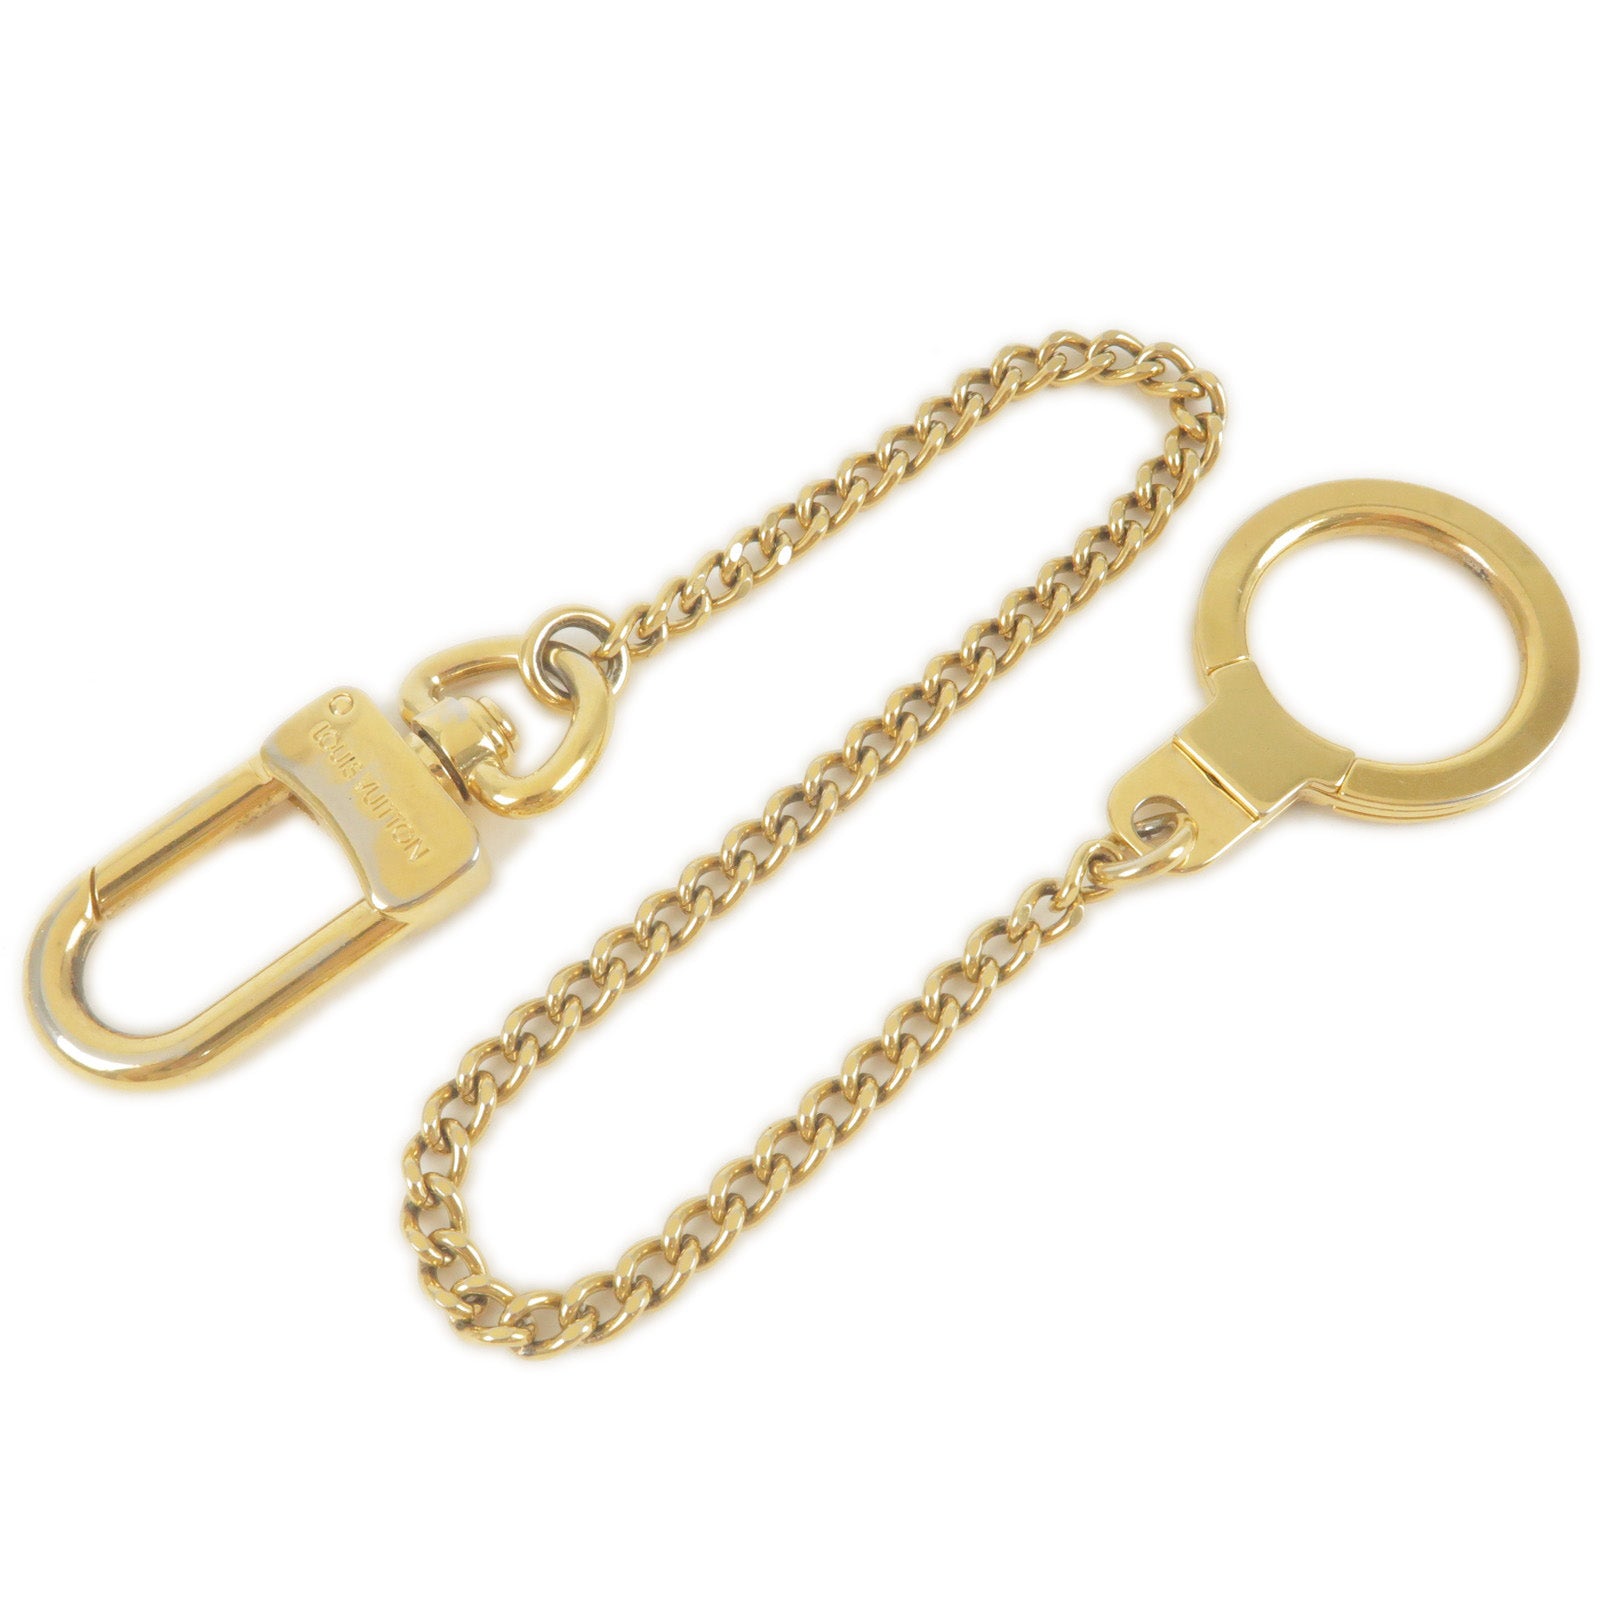 Louis Vuitton Key Charm